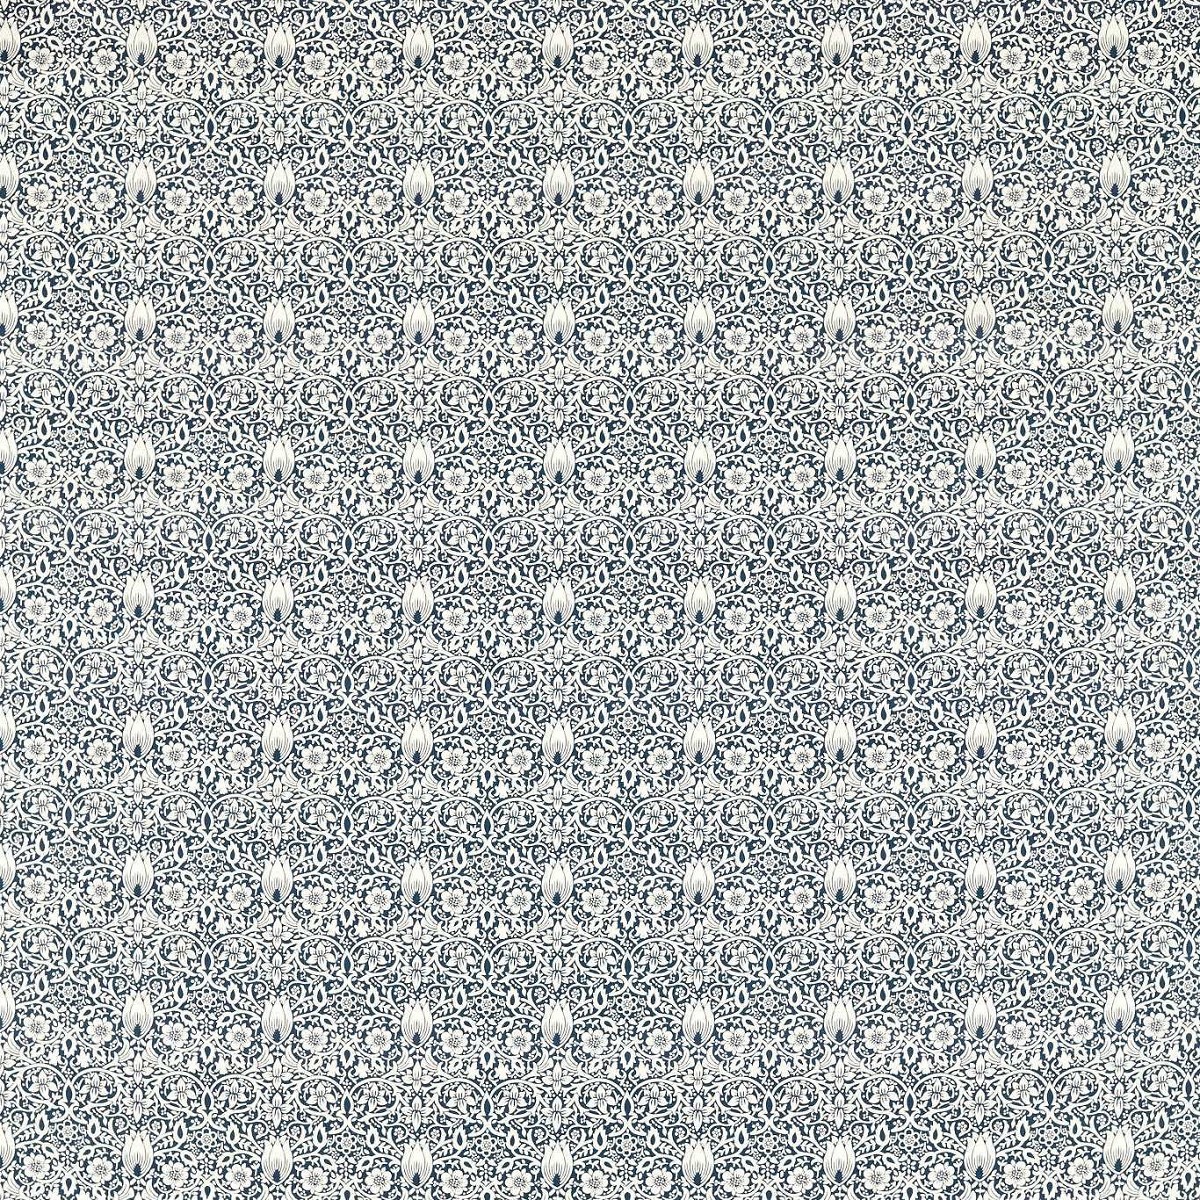 Borage Indigo Fabric by William Morris & Co.